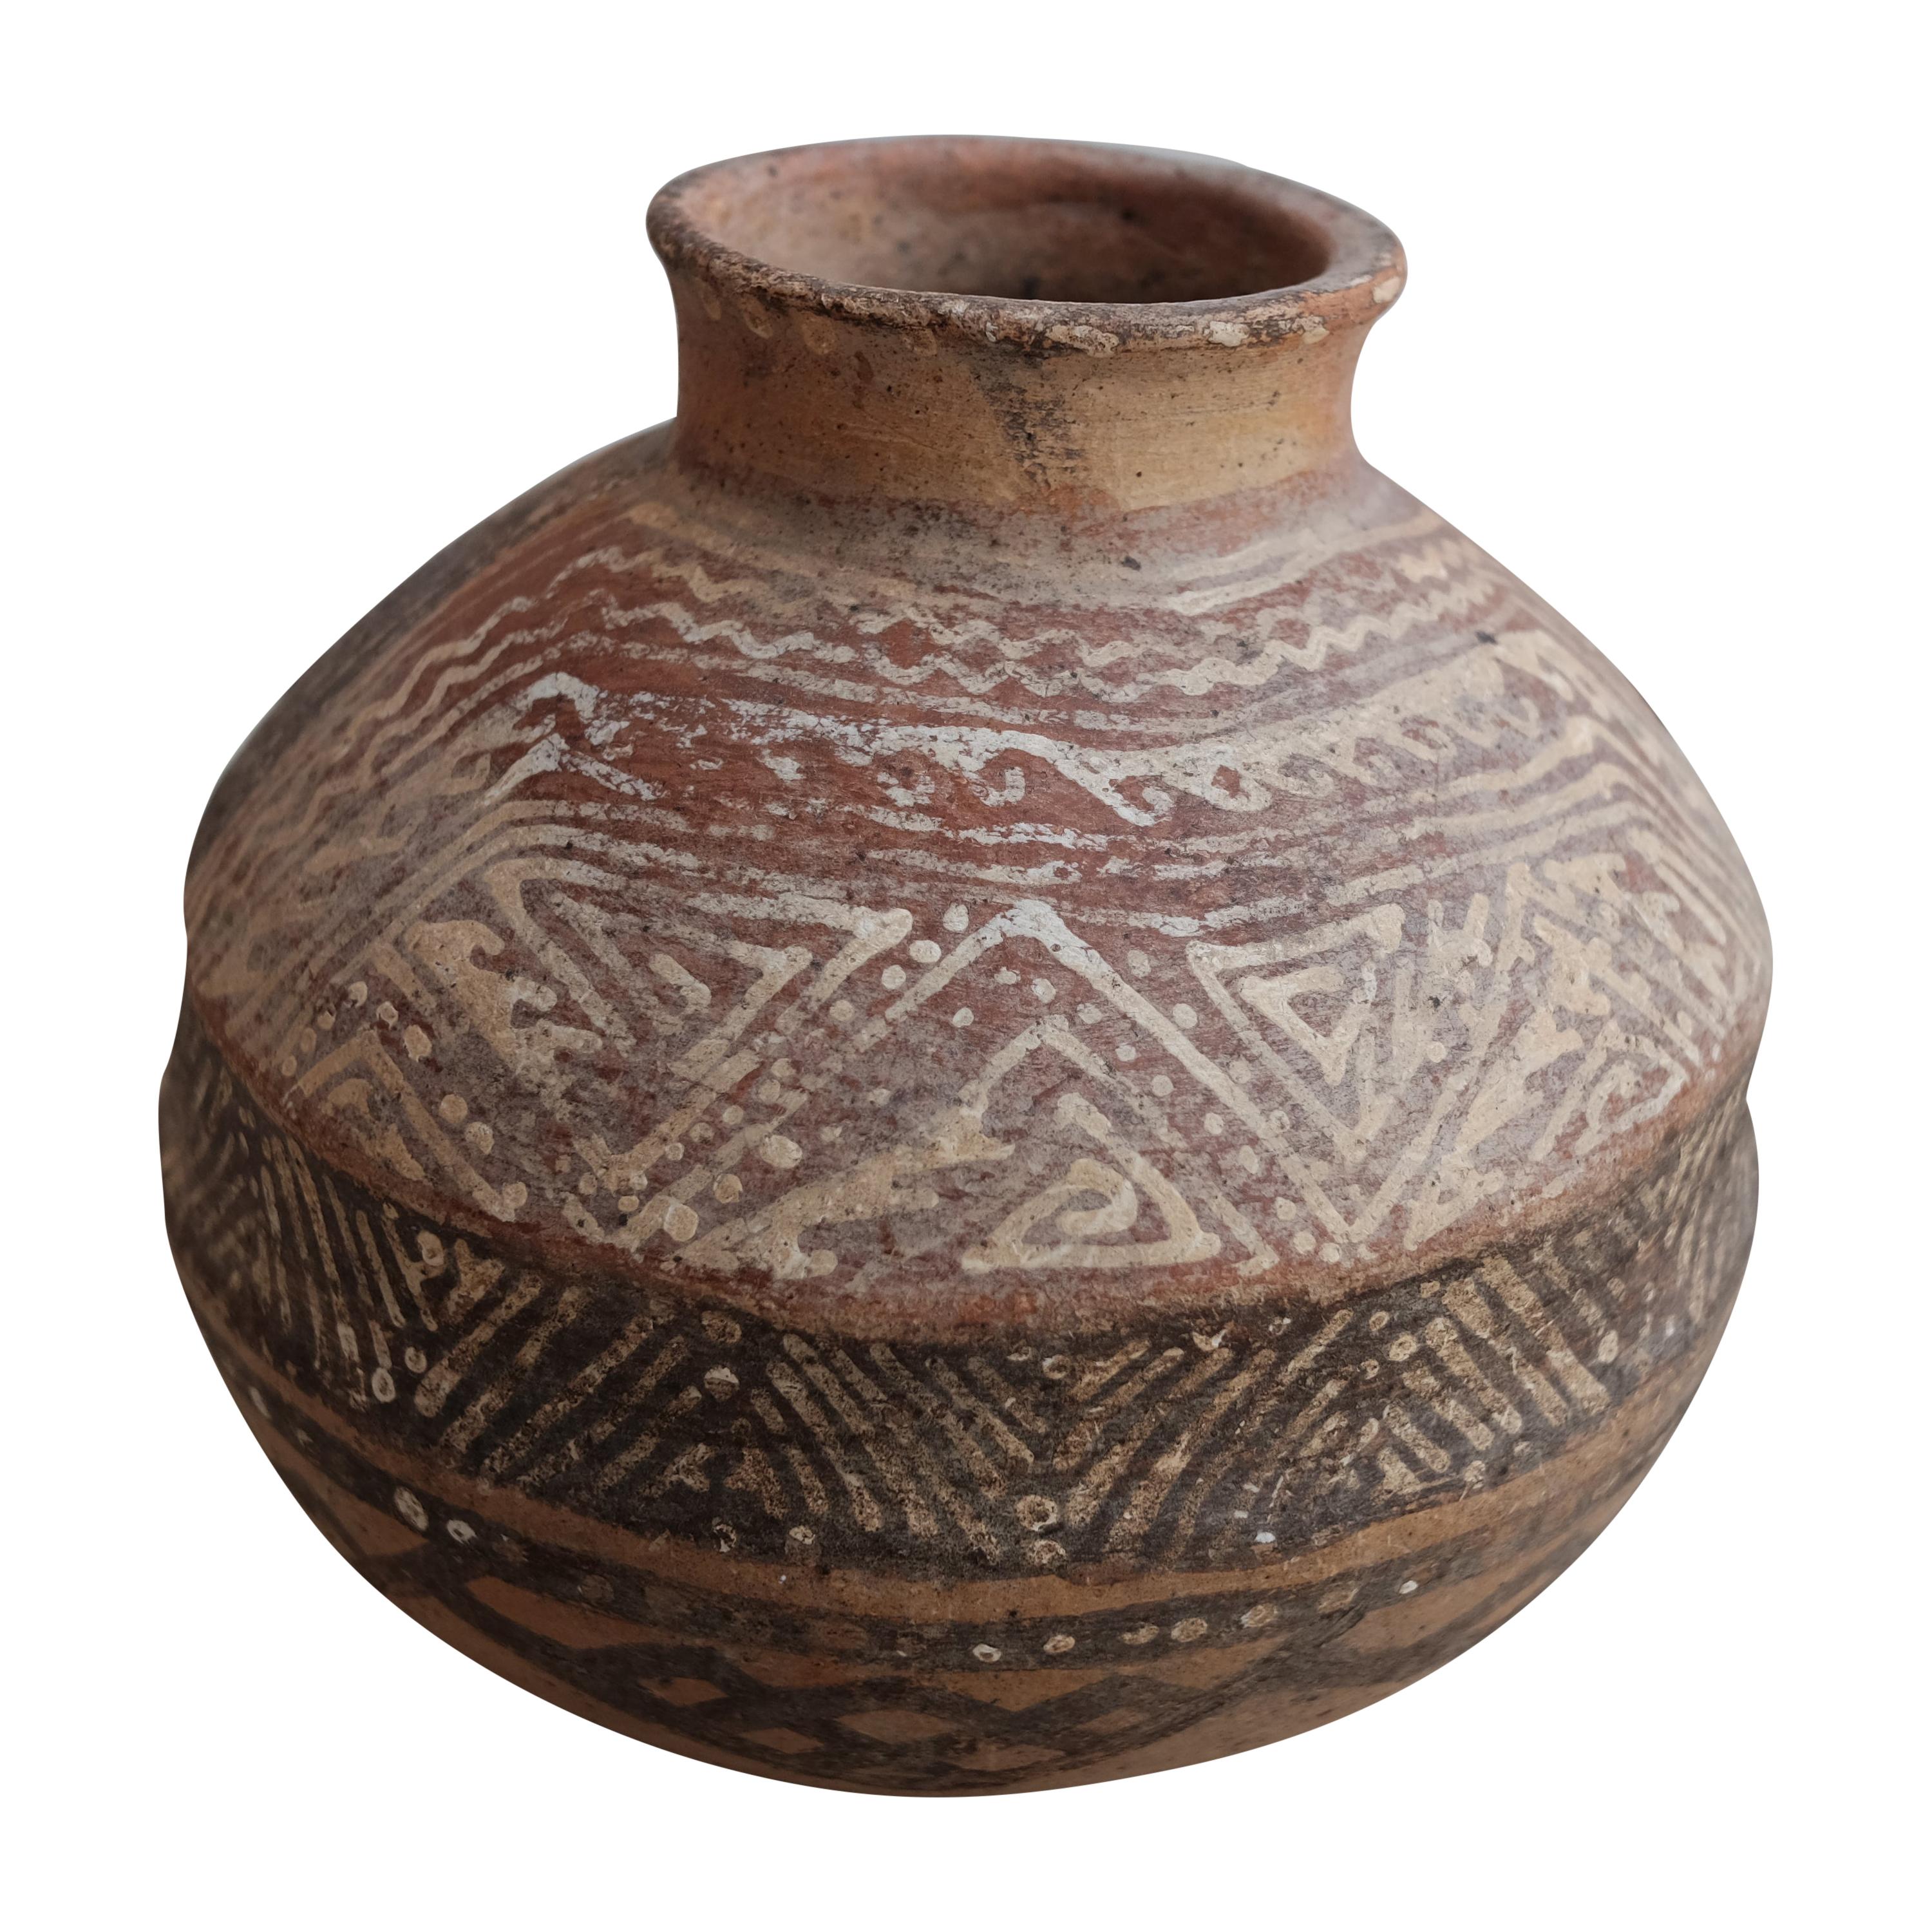 Pre-Hispanic Ceramic Vessel from Nayarit, Mexico